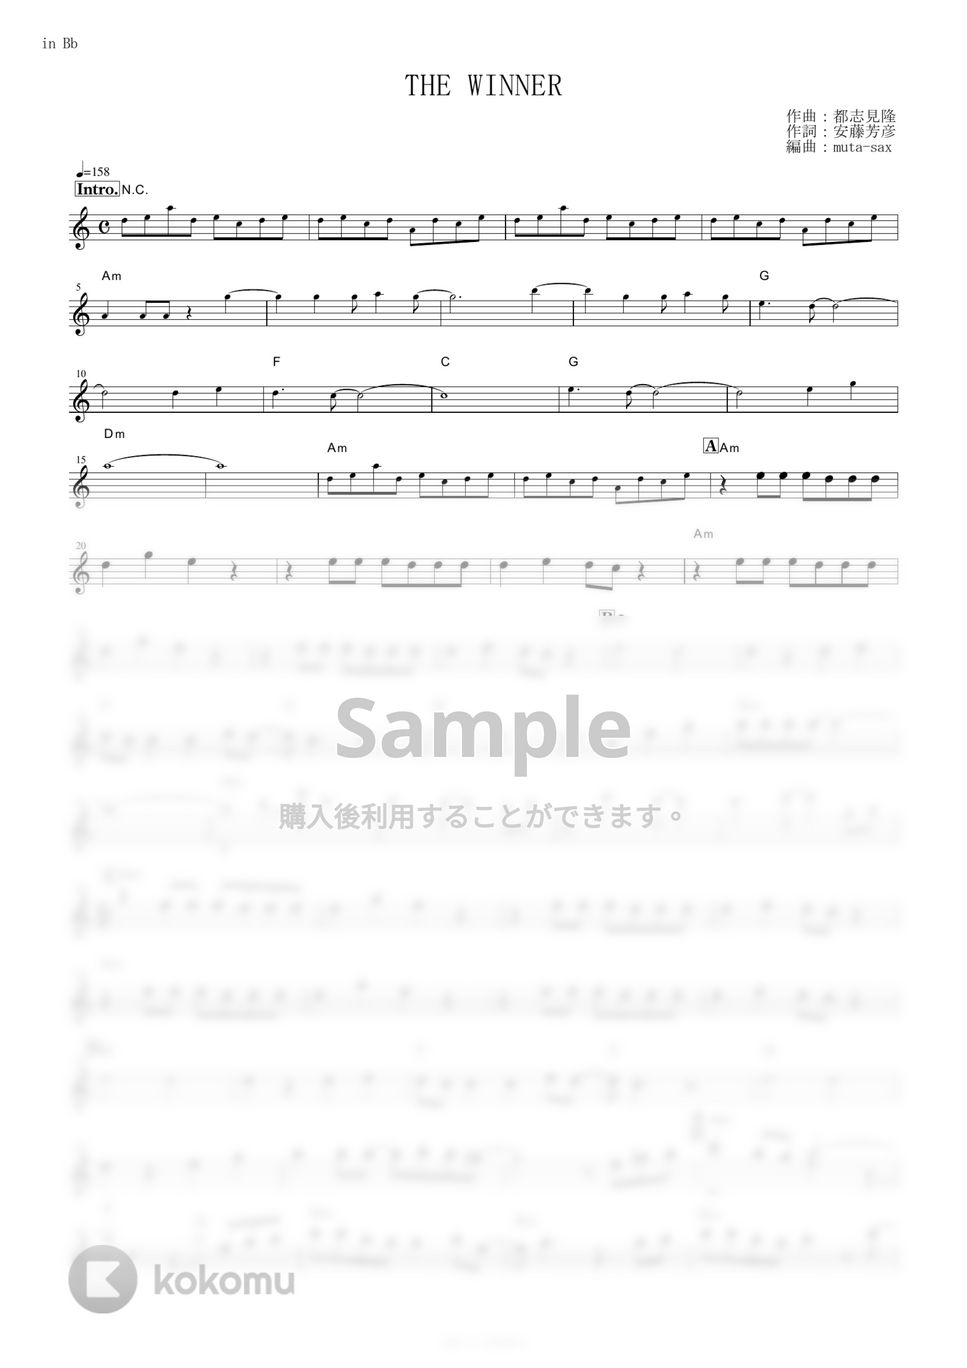 松原みき - THE WINNER (『機動戦士ガンダム0083 STARDUST MEMORY』 / in Bb) by muta-sax